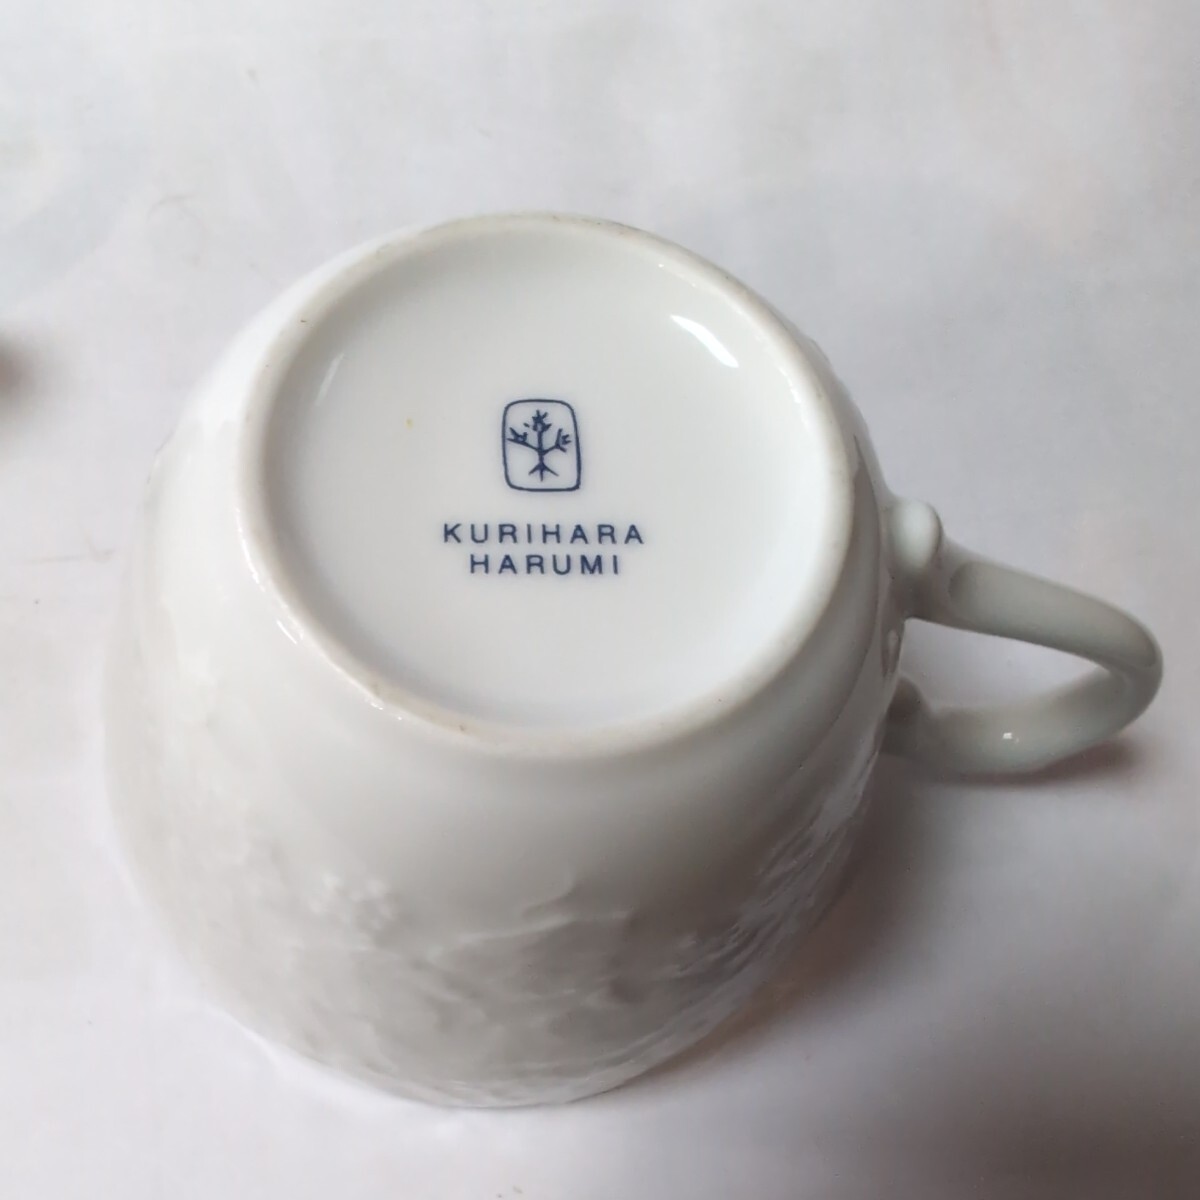 # каштан .. ..# teapot, кружка набор чашек # б/у товар #